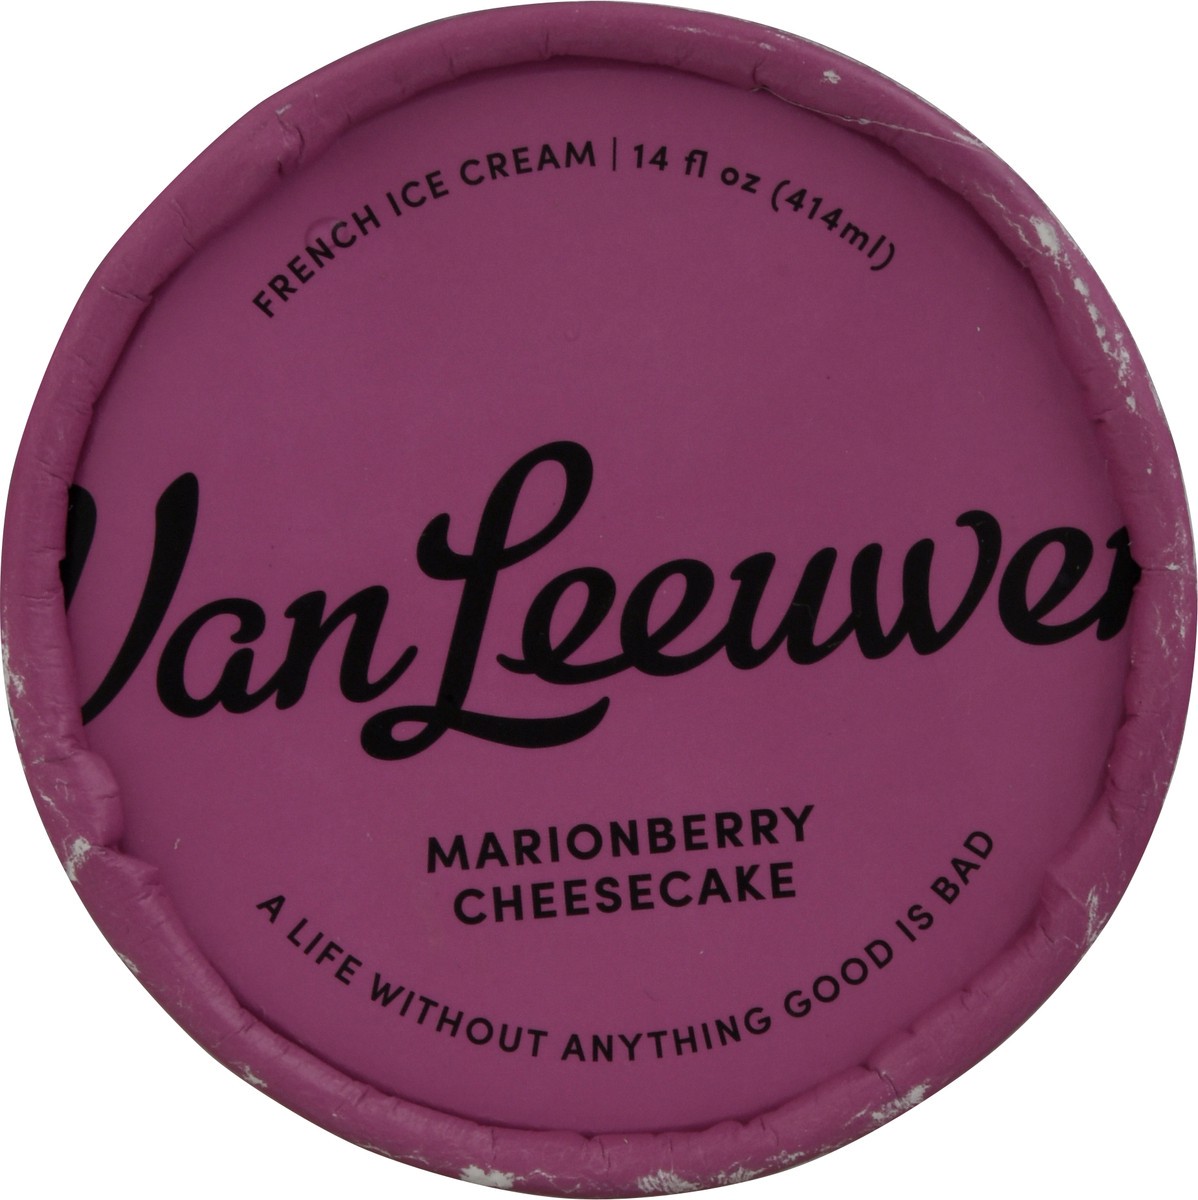 slide 9 of 9, Van Leeuwen Marionberry Cheesecake French Ice Cream 14 fl oz, 14 fl oz